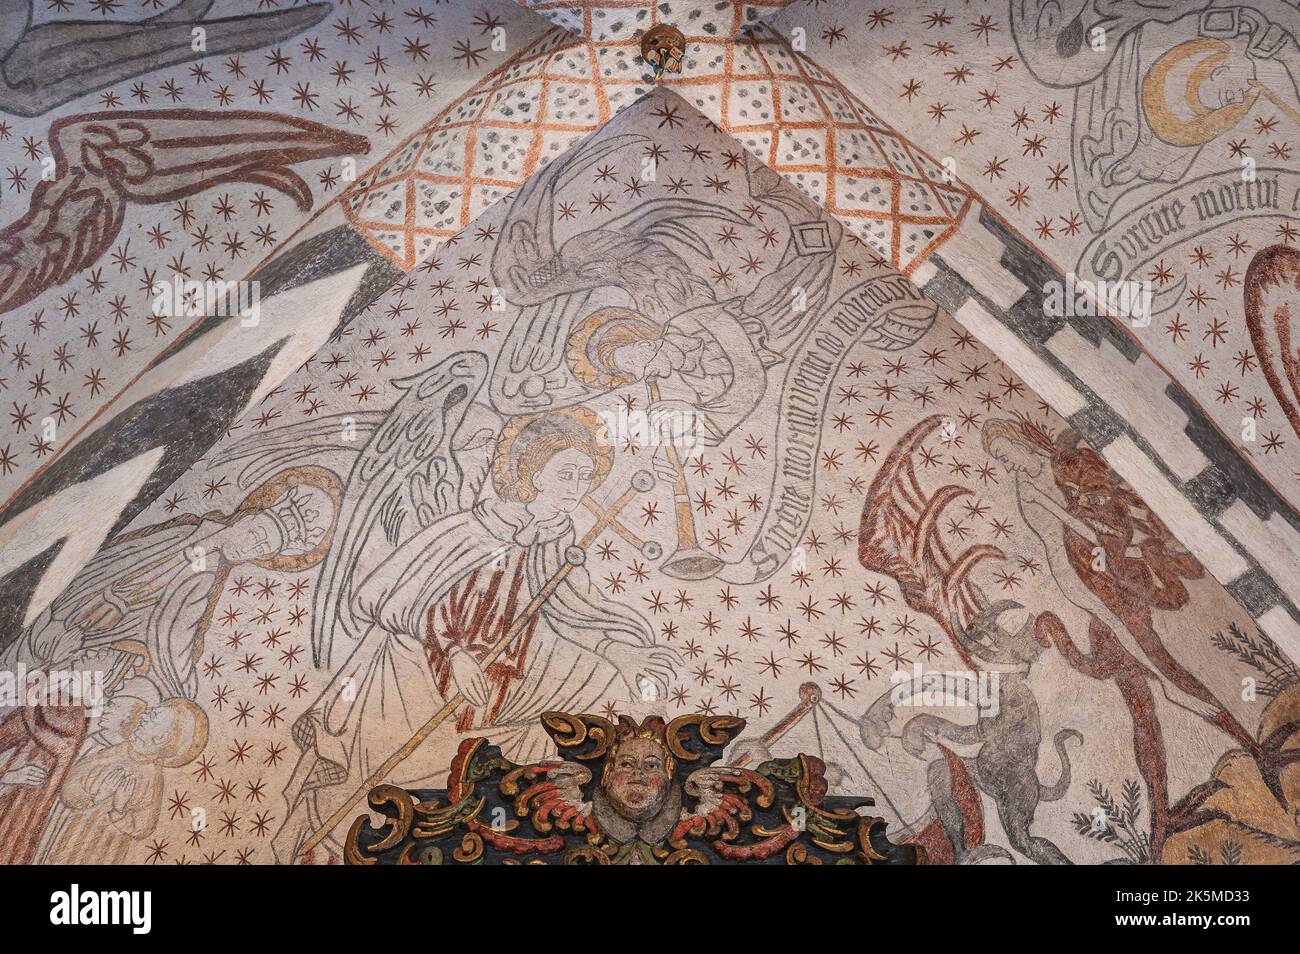 Angeli che suonano il giorno del djungement, pitture murali gotiche nelle volte della chiesa di Kirke Hyllinge, Danimarca, 4 ottobre 2022 Foto Stock